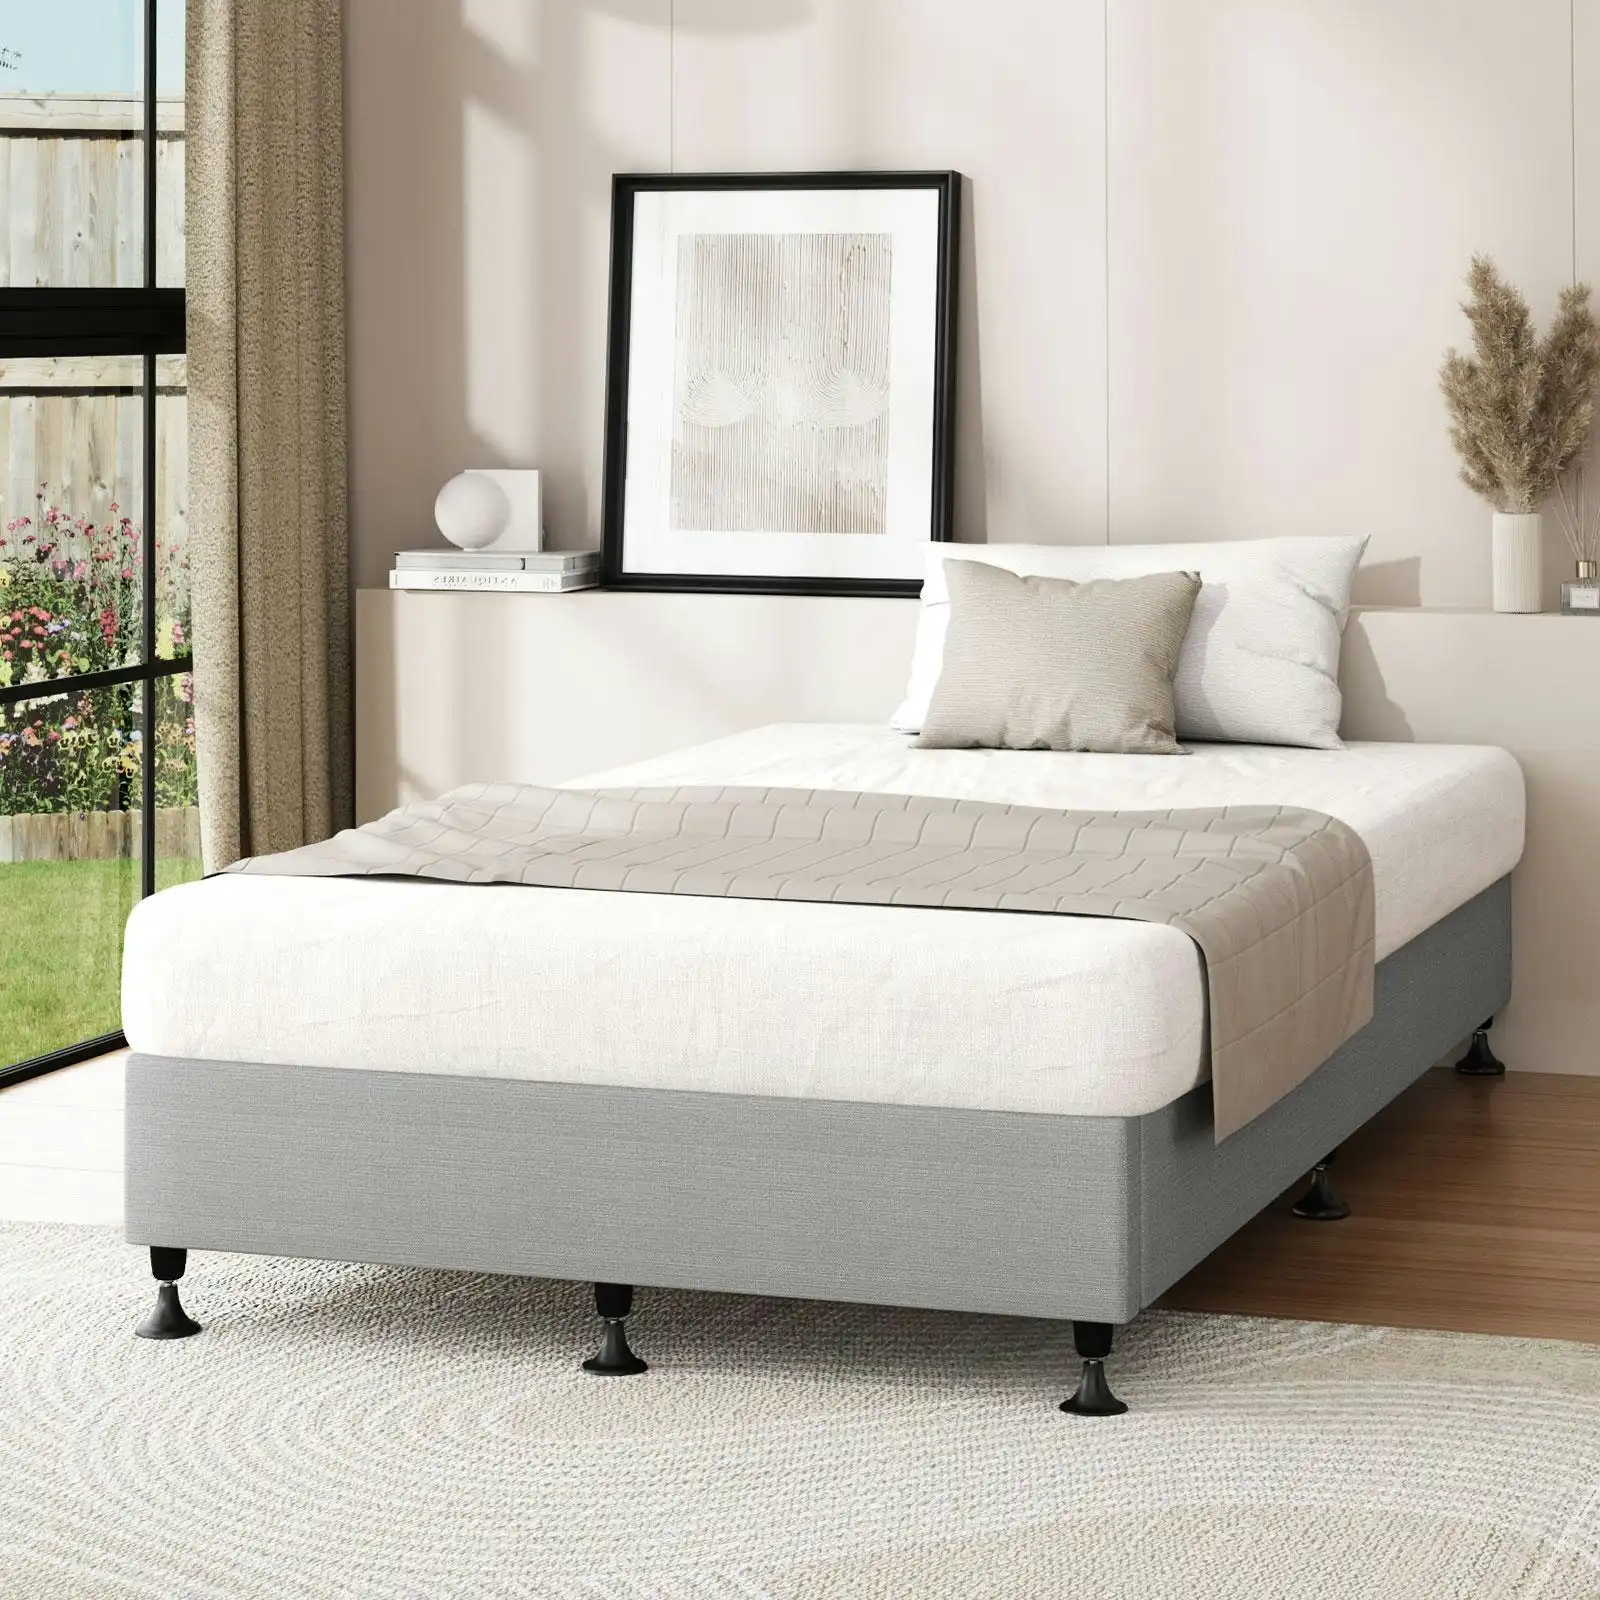 Oikiture Bed Frame King Single Bed Base Platform Grey